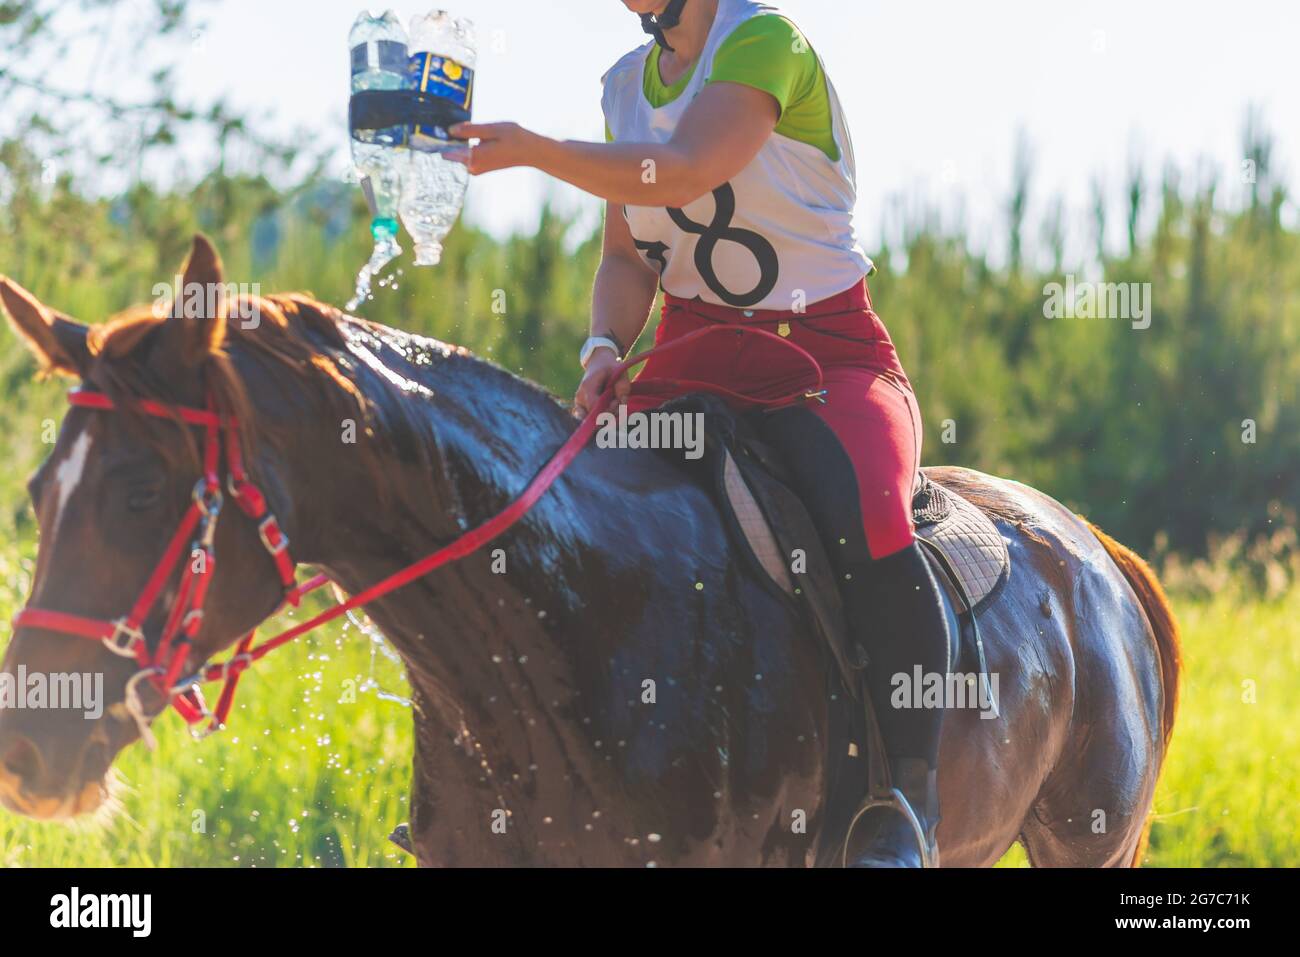 Konkurrent gießen Wasser auf das Pferd in Sommerfeld Wiese.Junge Reiter galoppiert durch den Sommer sonnigen Tag.Rivalität Konzept. Stockfoto